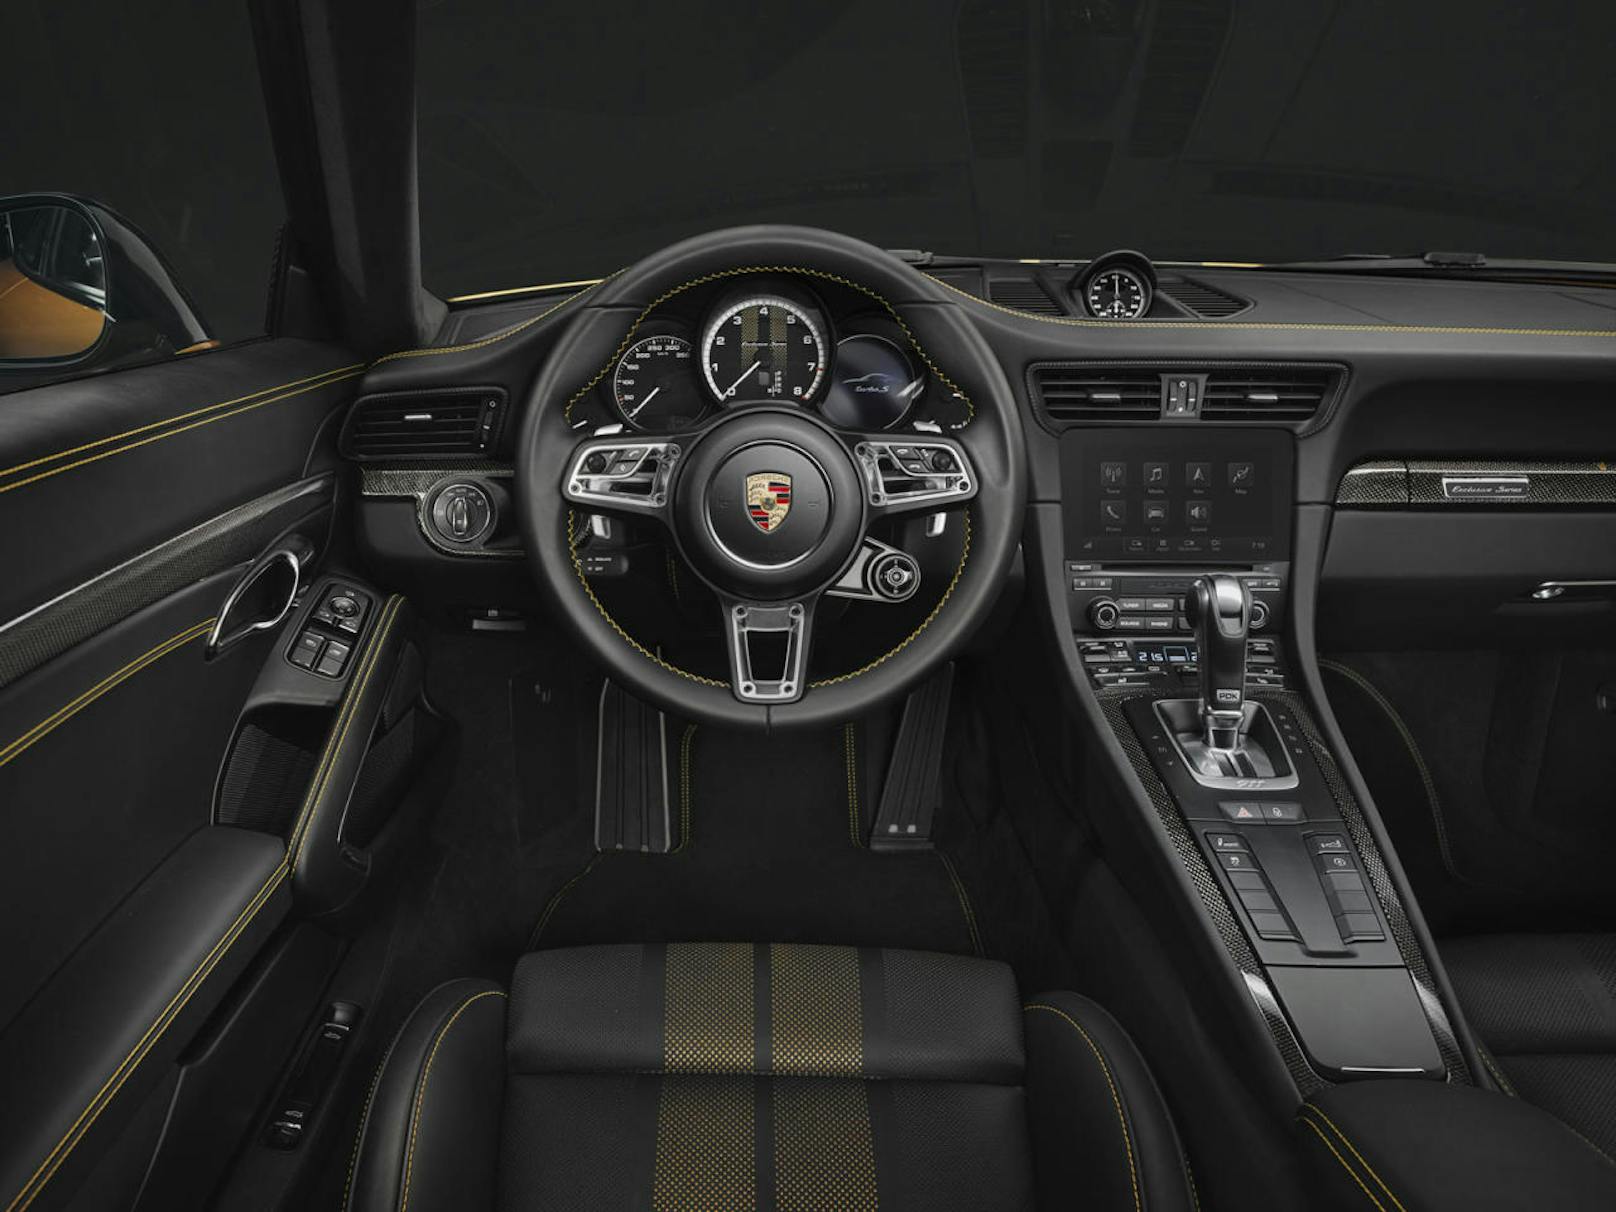 Innenraum des Porsche 911 Turbo S Exclusive Series